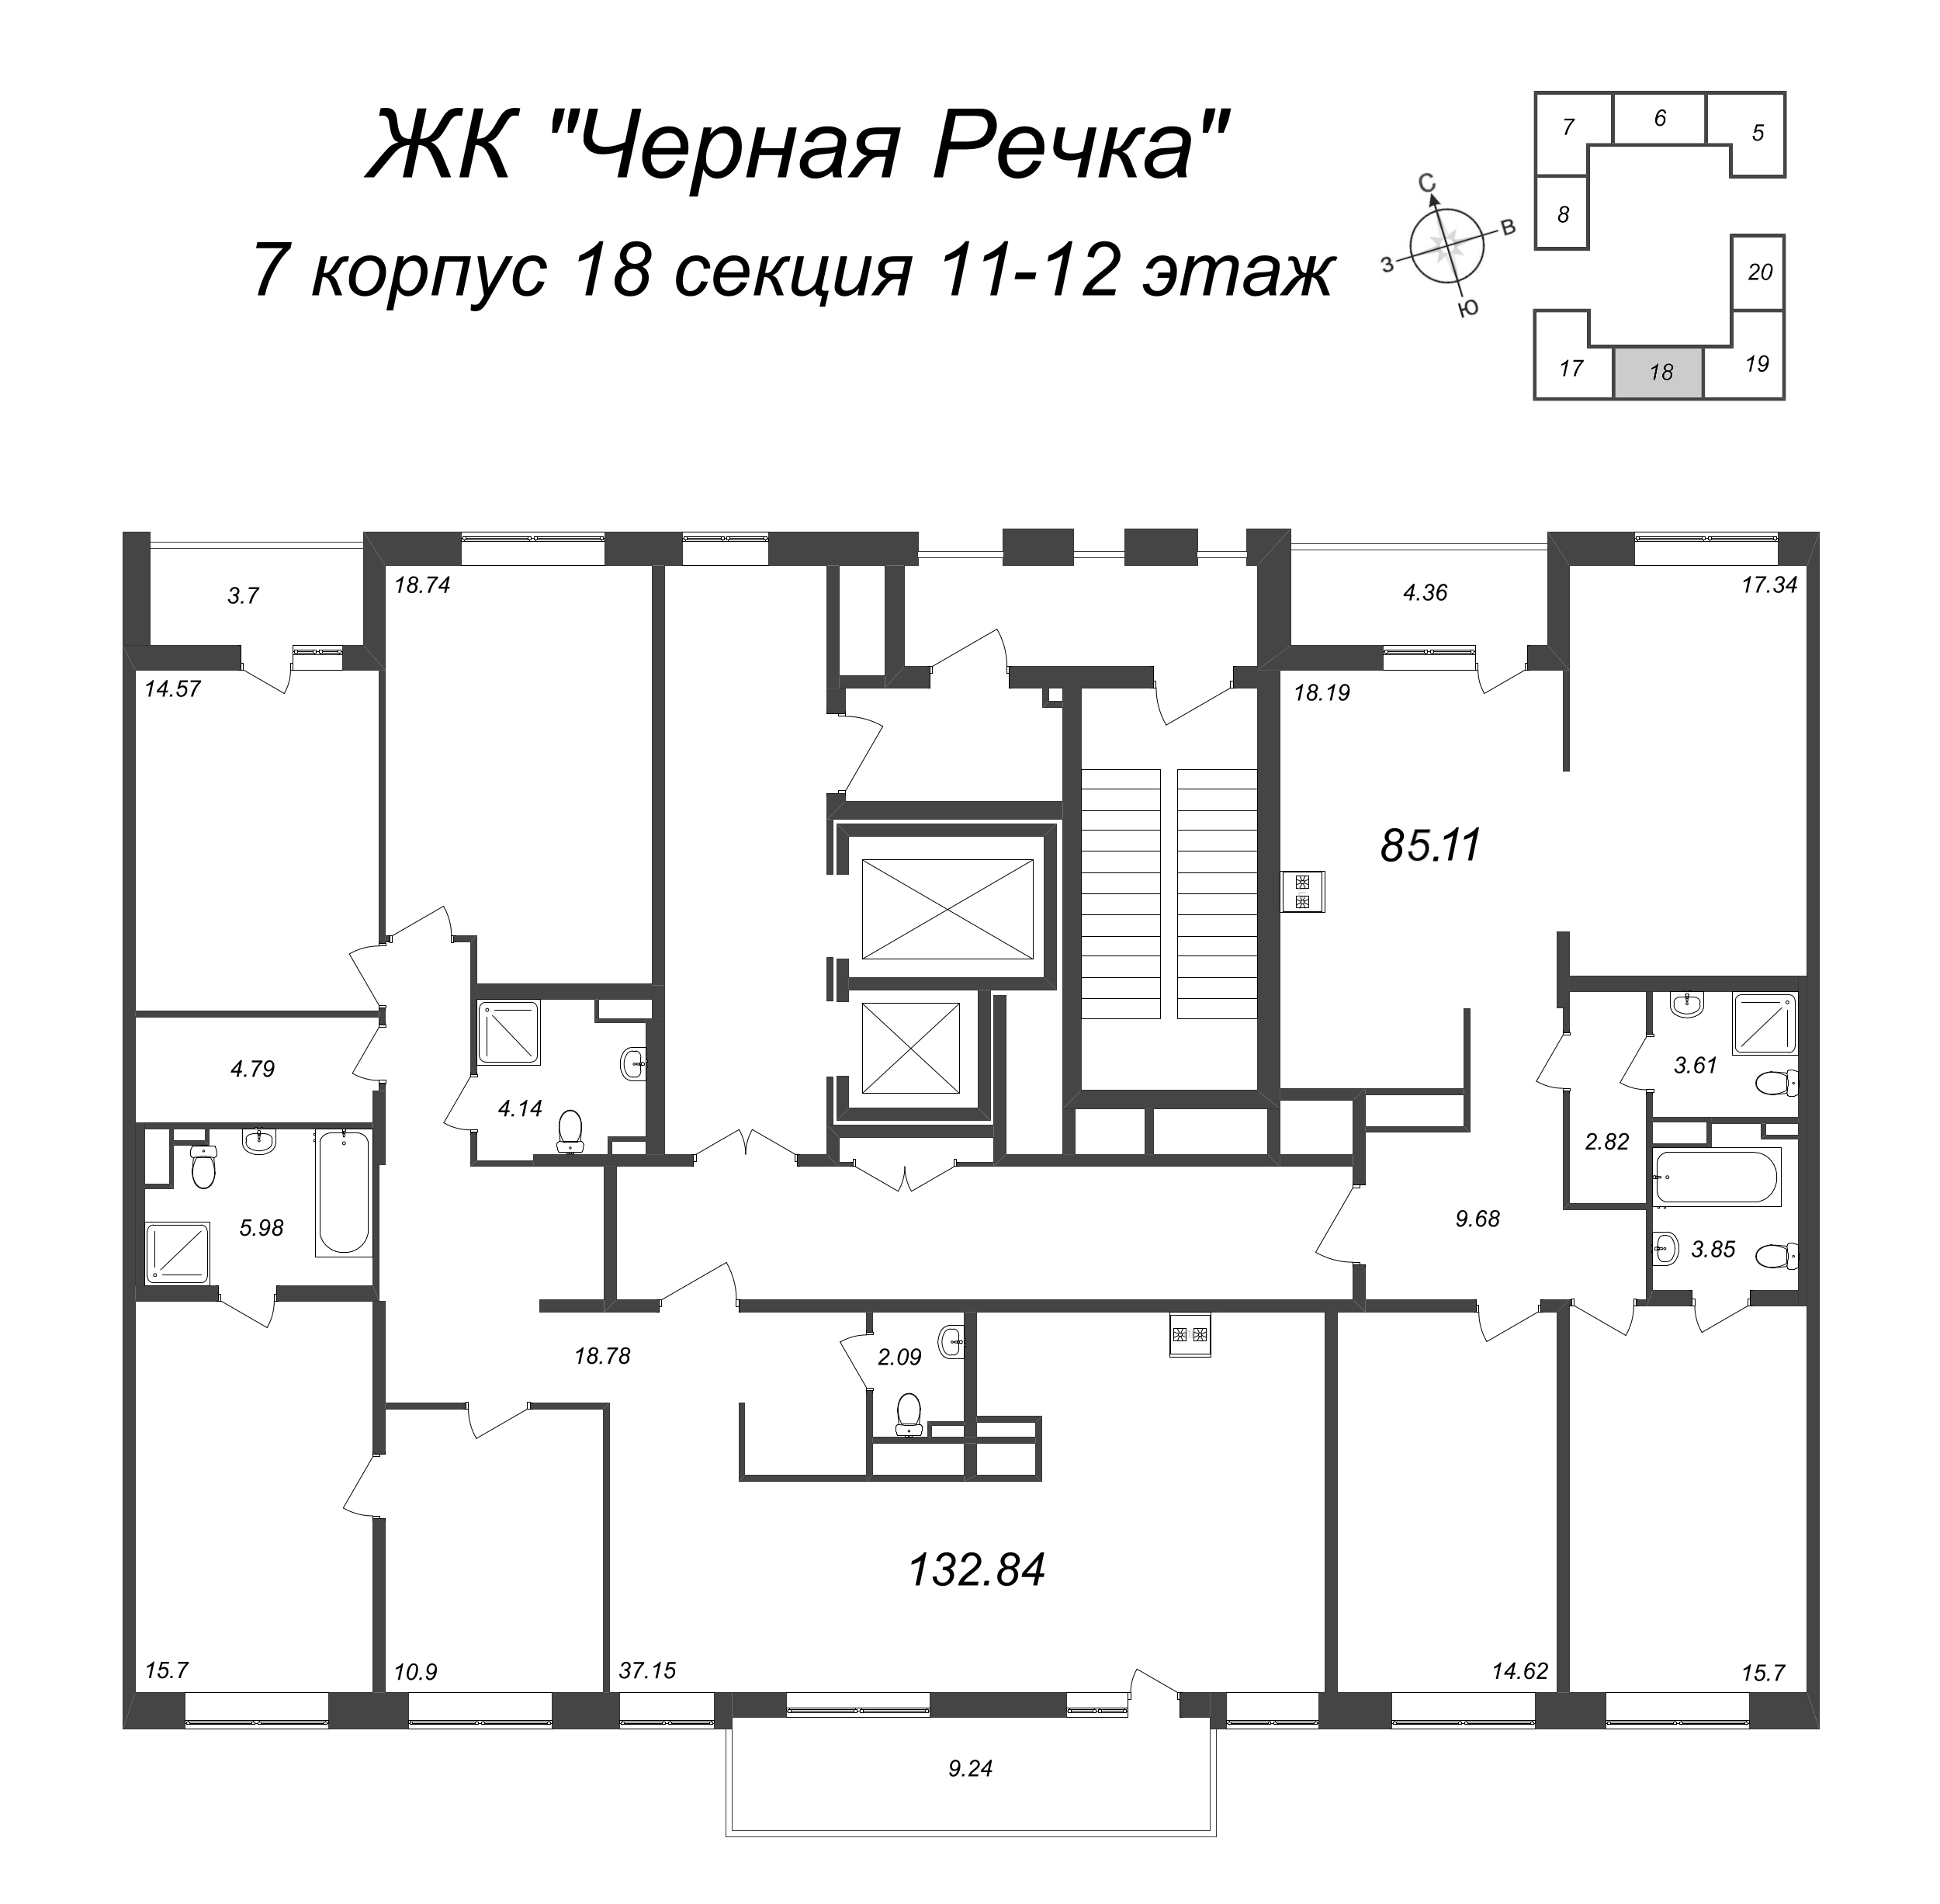 3-комнатная (Евро) квартира, 85.81 м² в ЖК "Чёрная речка" - планировка этажа